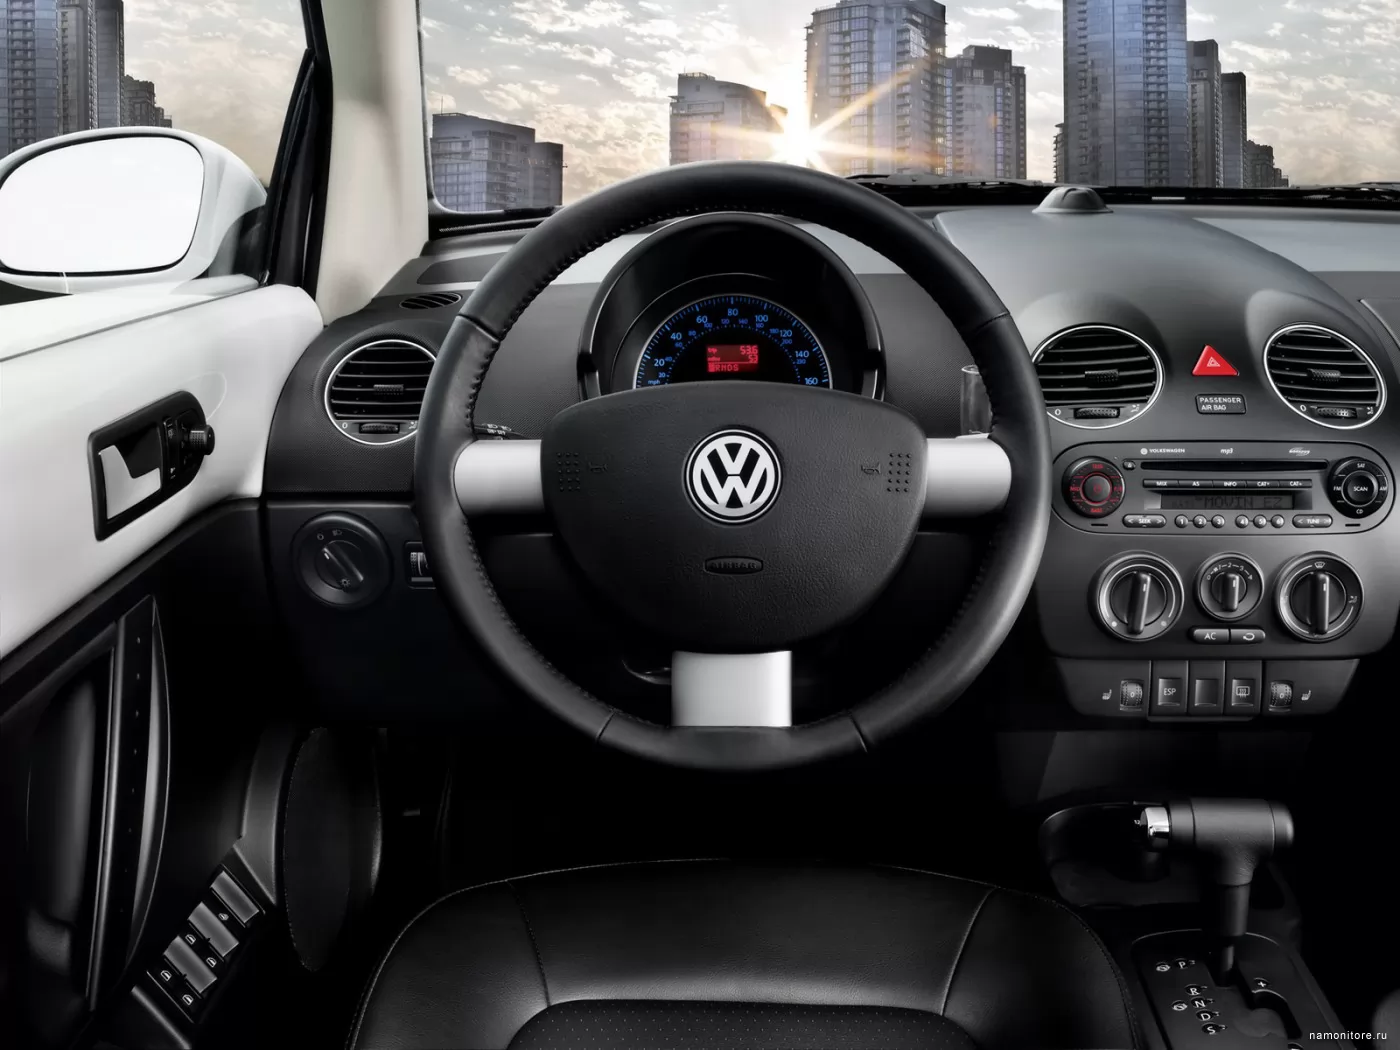  Volkswagen New Beetle, Volkswagen, , , ,  